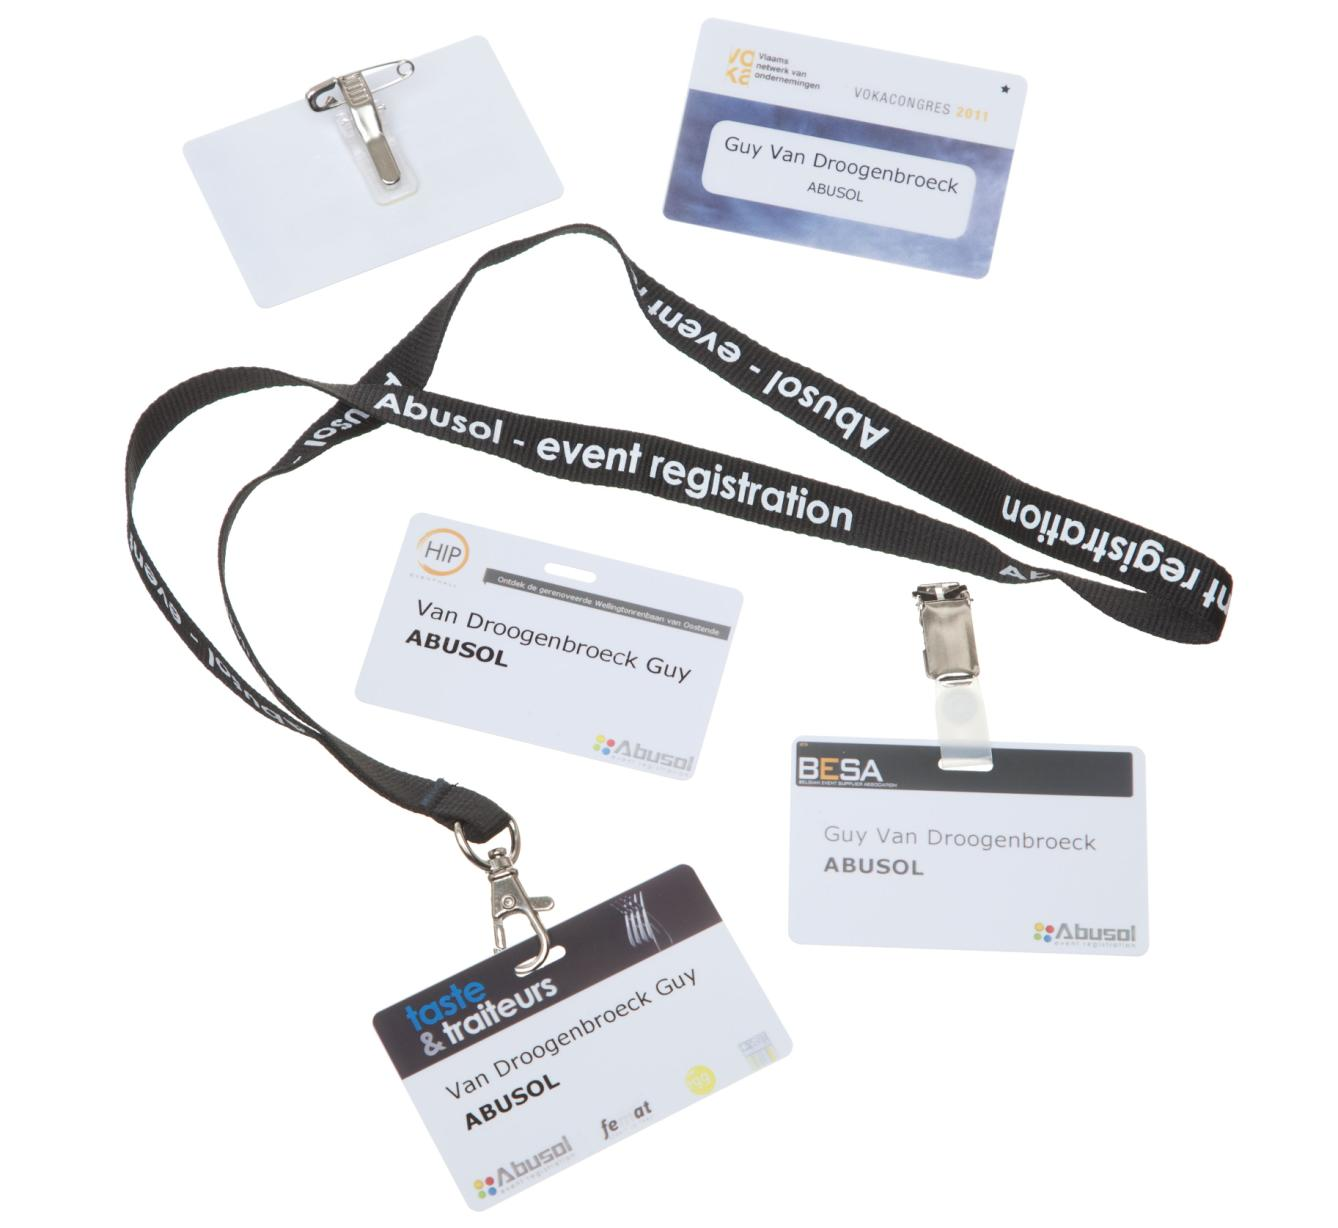 3) PVC card Hierbij wordt de badge op een plastic card (in bankkaartformaat) geprint.